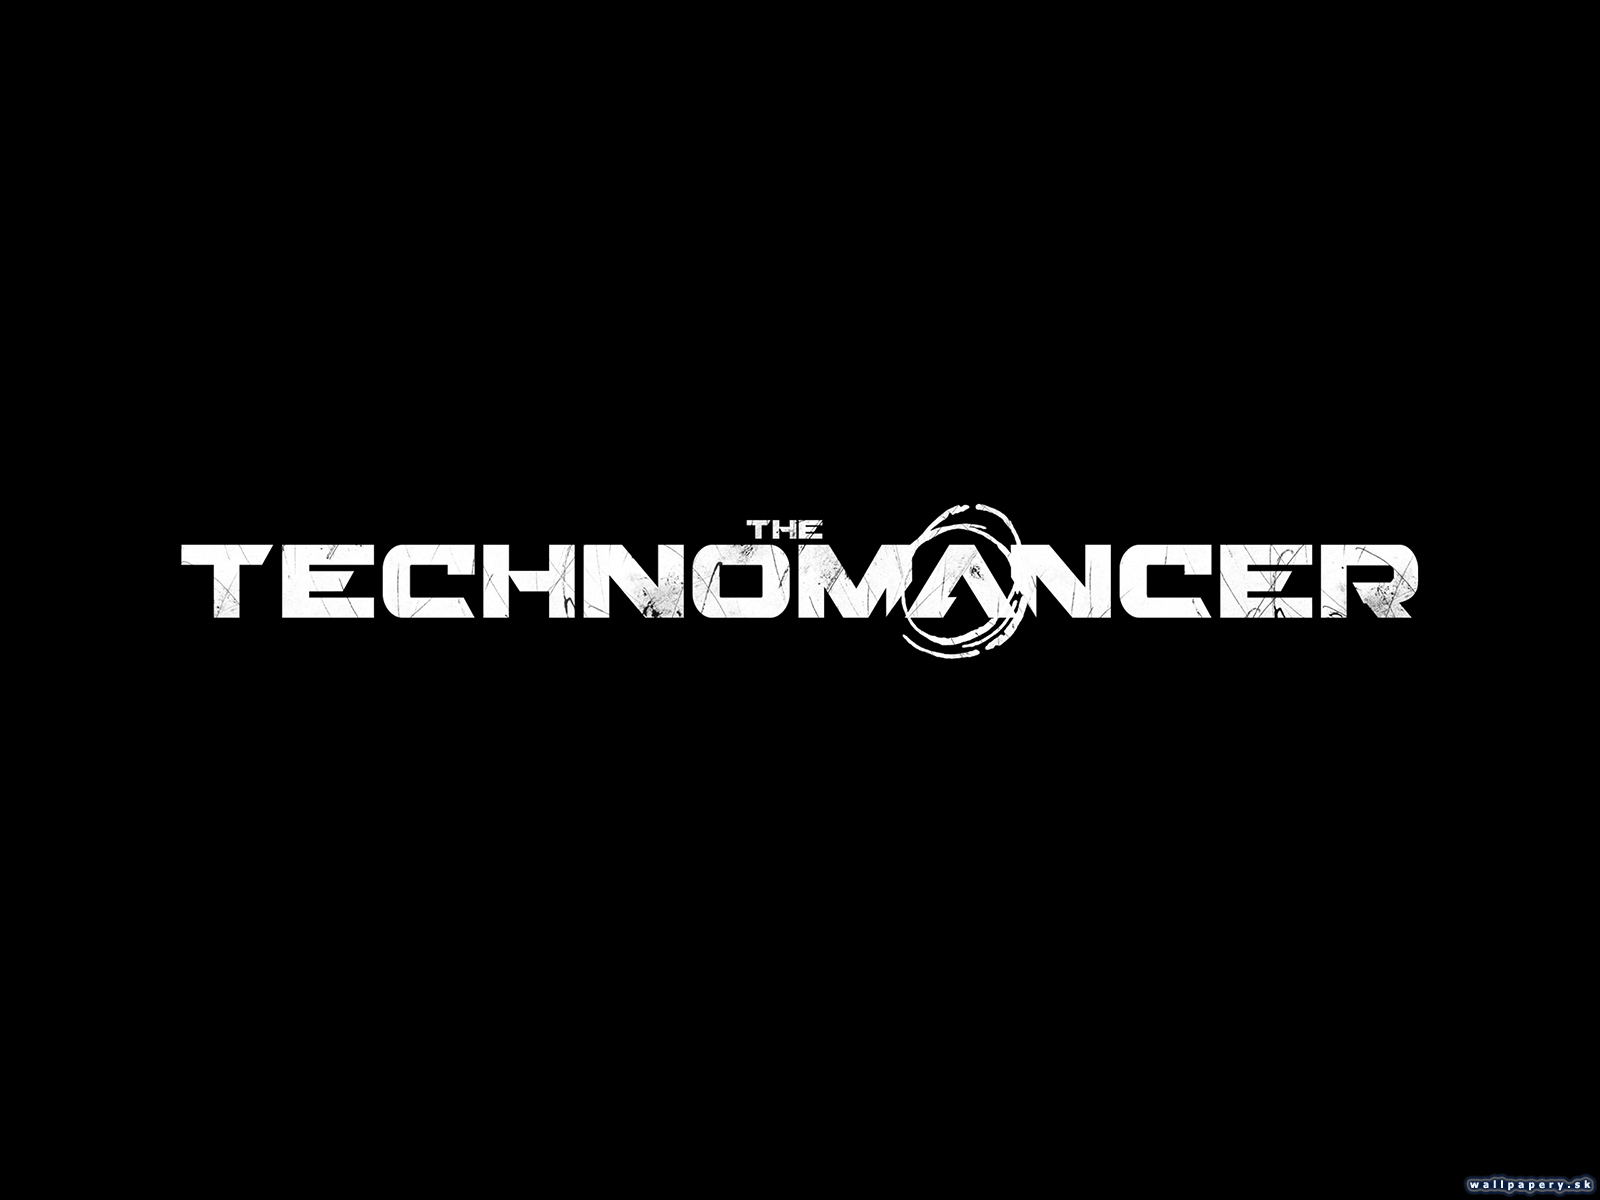 The Technomancer - wallpaper 2